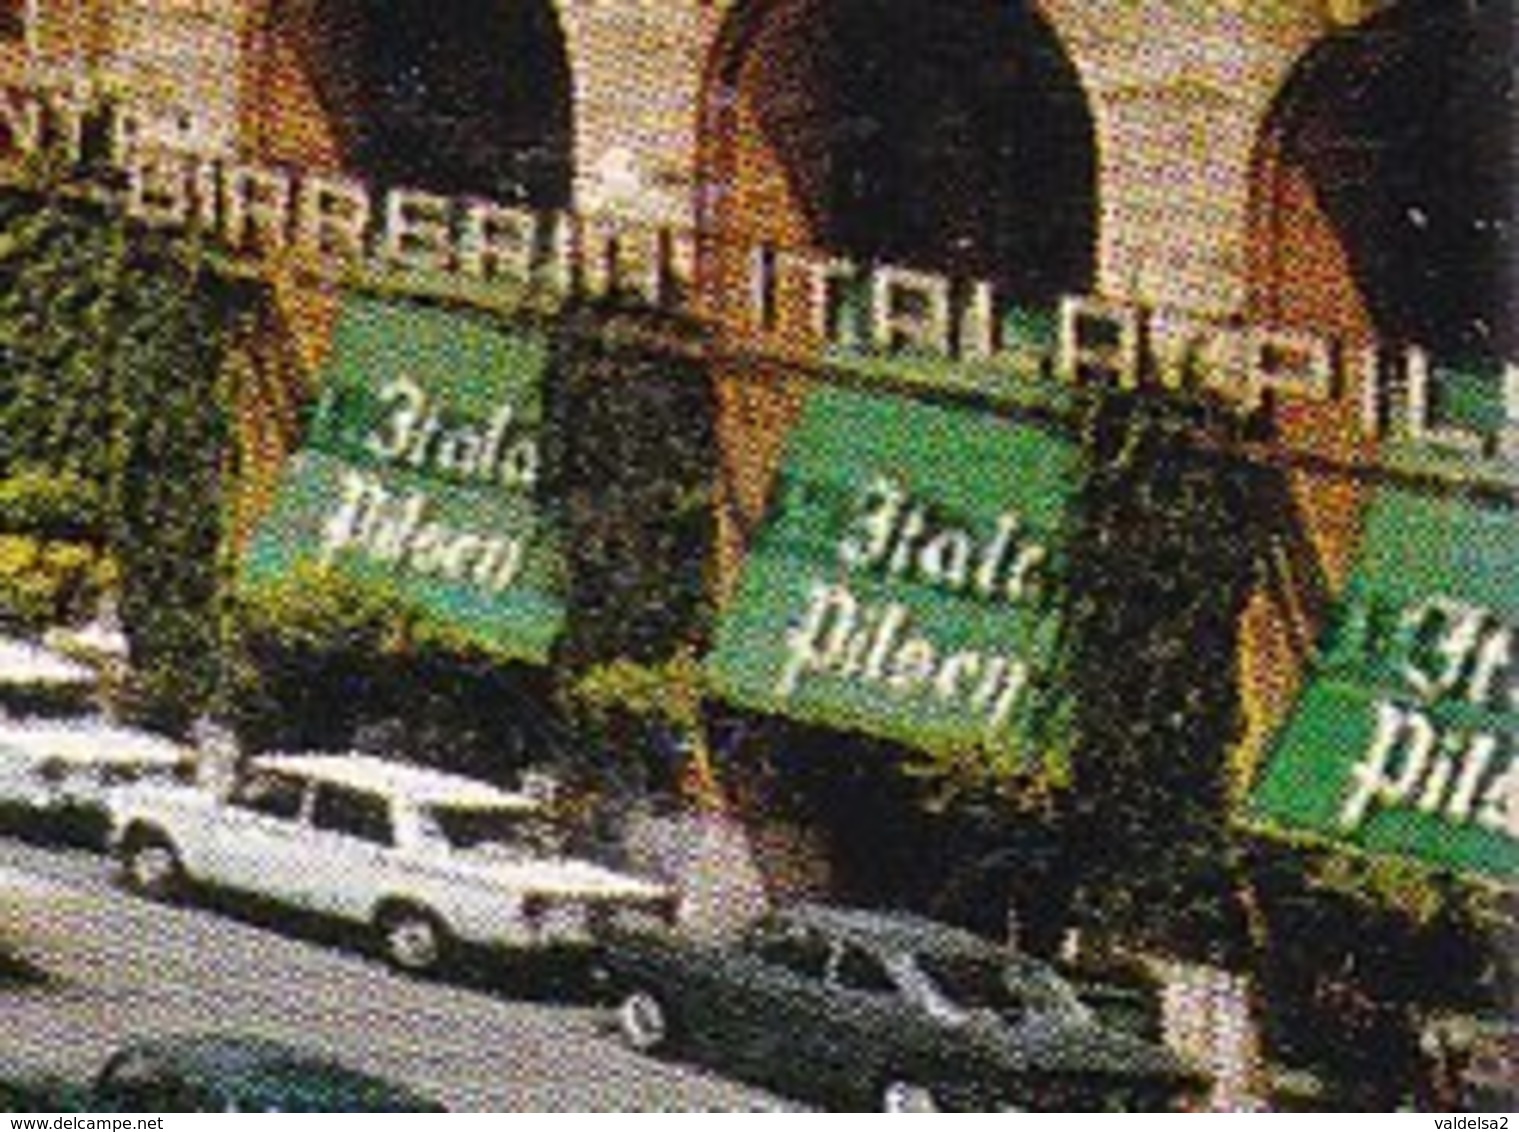 PADOVA - PIAZZA INSURREZIONE - BIRRERIA ITALA PILSEN - BIRRA - AUTO - INSEGNA PUBBLICITARIA GELOSO - 1975 - Padova